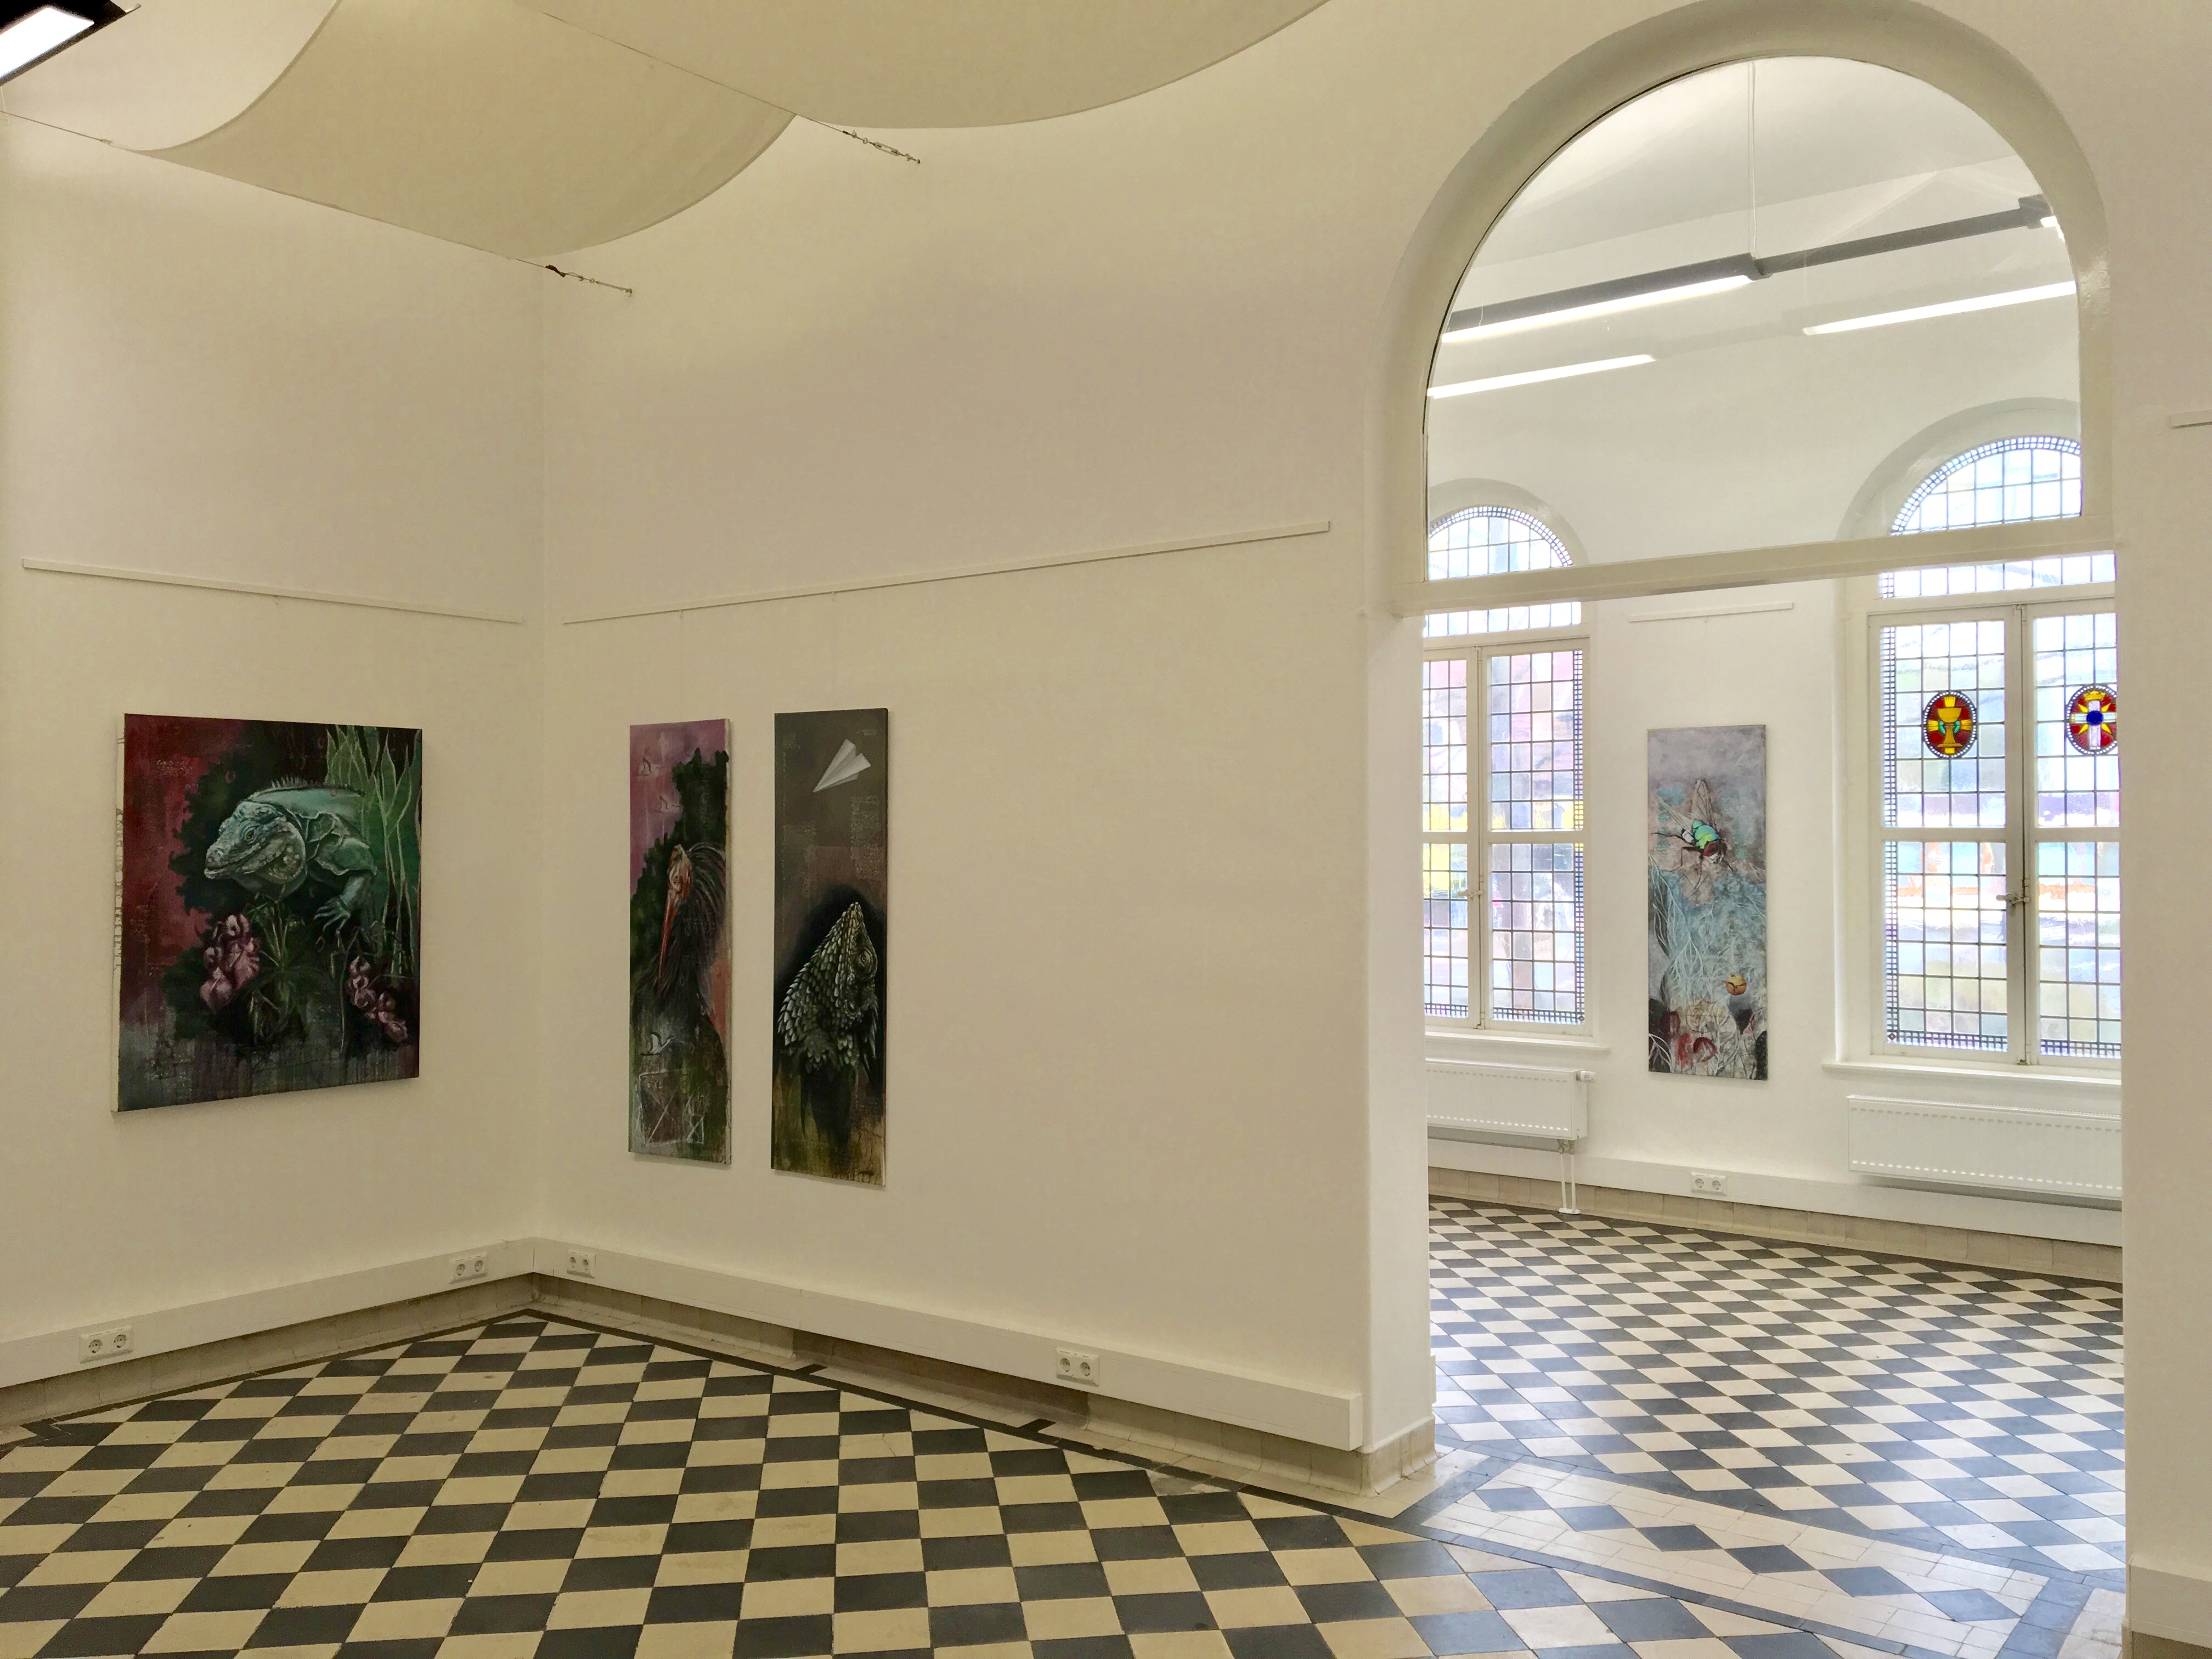 Torhaus Galerie, Göttingen, Germany 2018